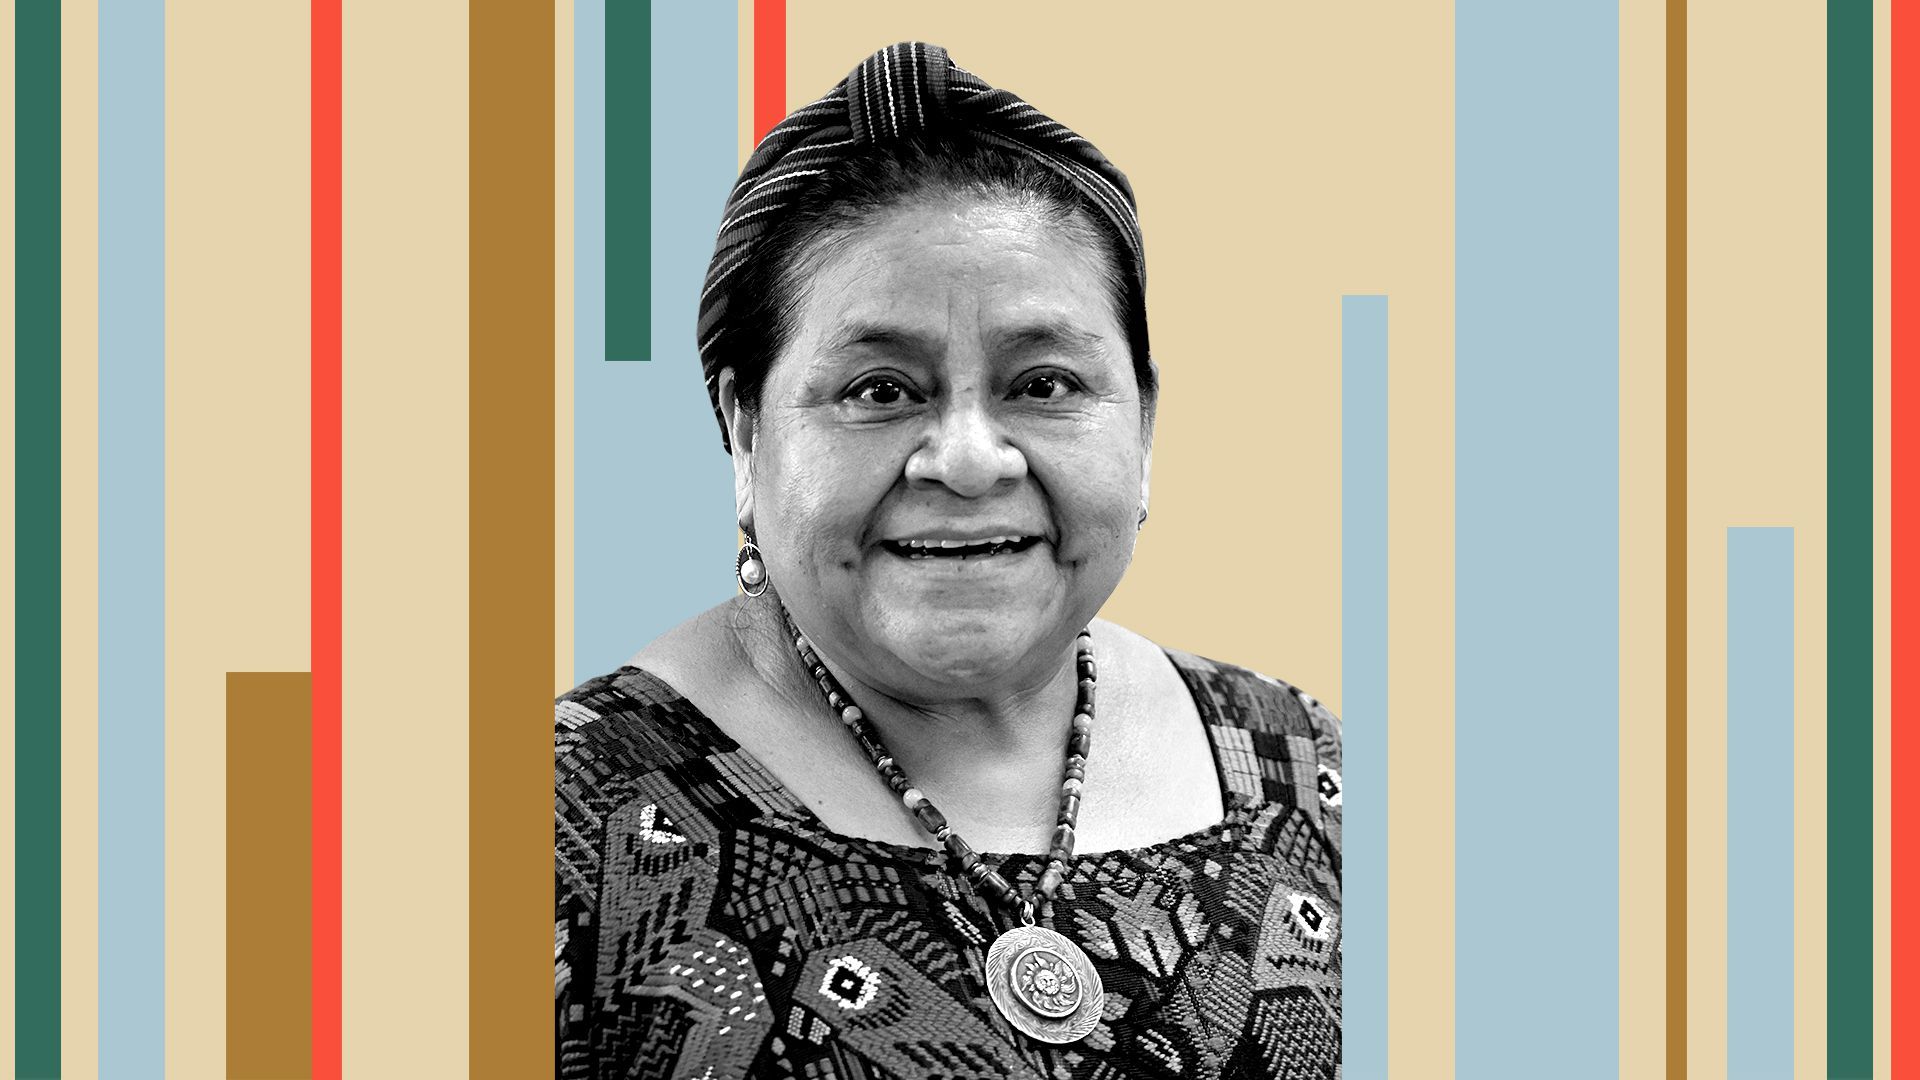 Photo illustration of Rigoberta Menchú